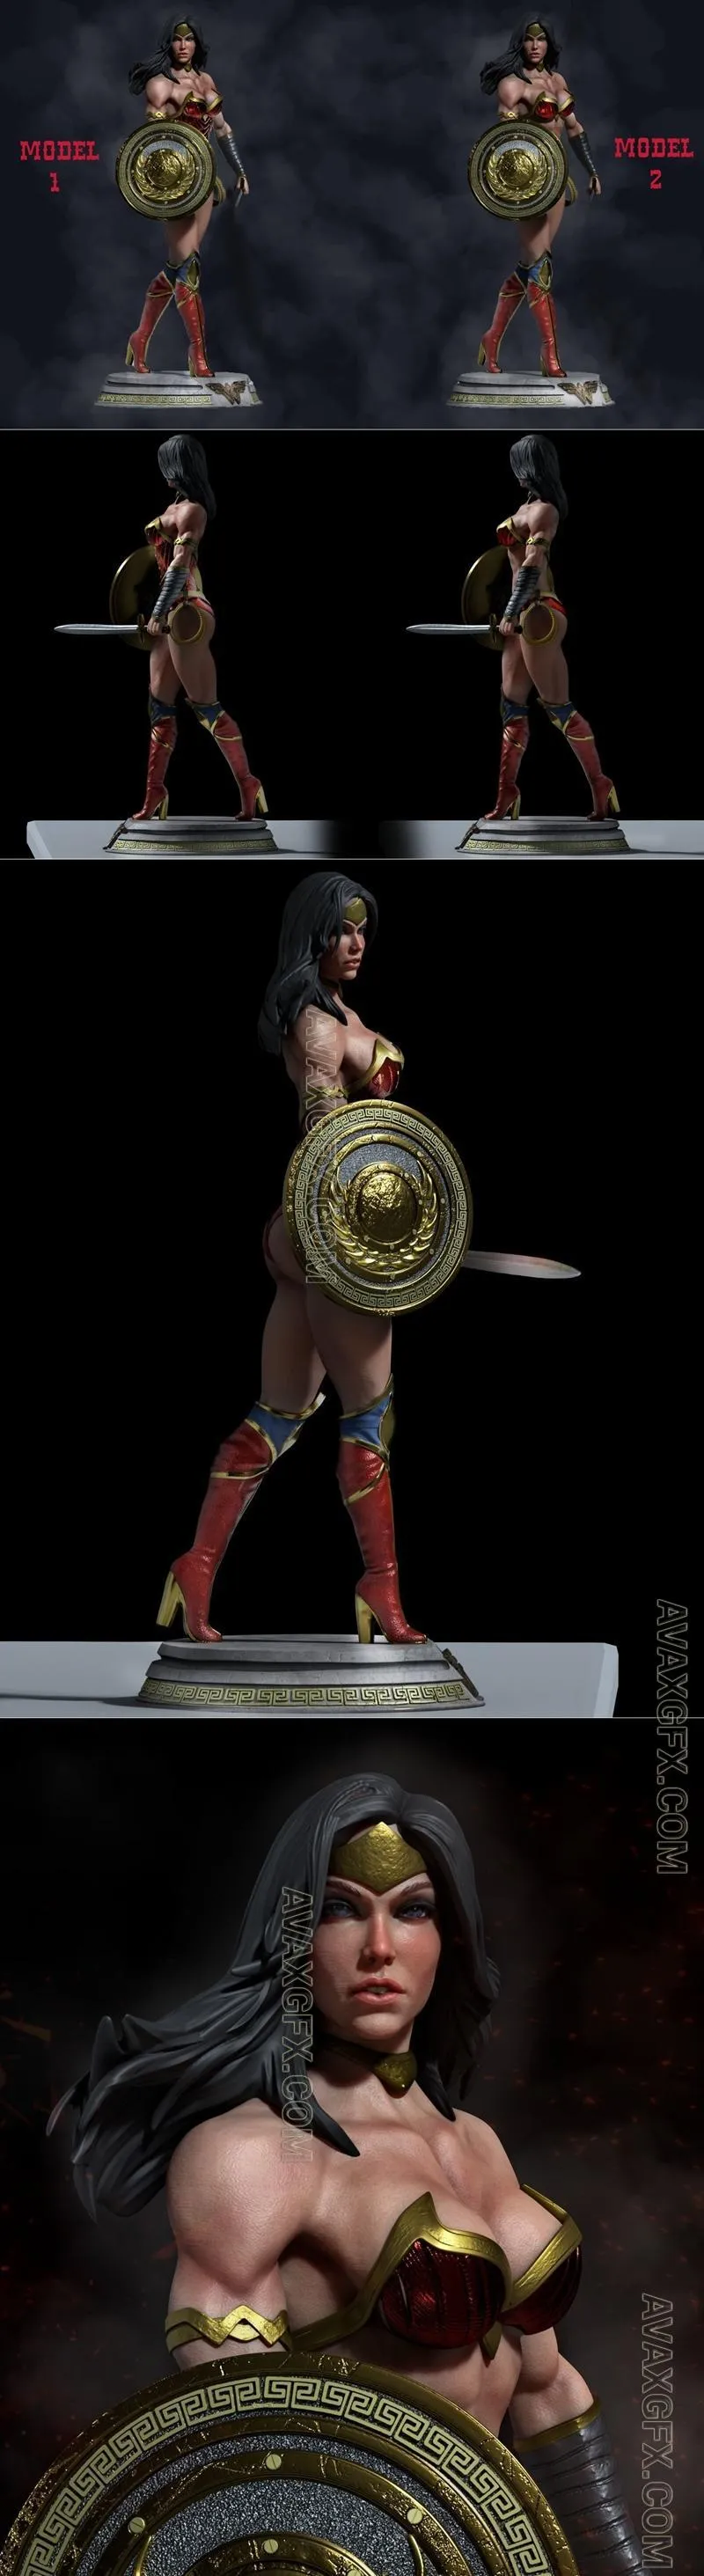 Ca 3d Studios - Wonder Woman Pack Model 1 and Model 2 - STL 3D Model